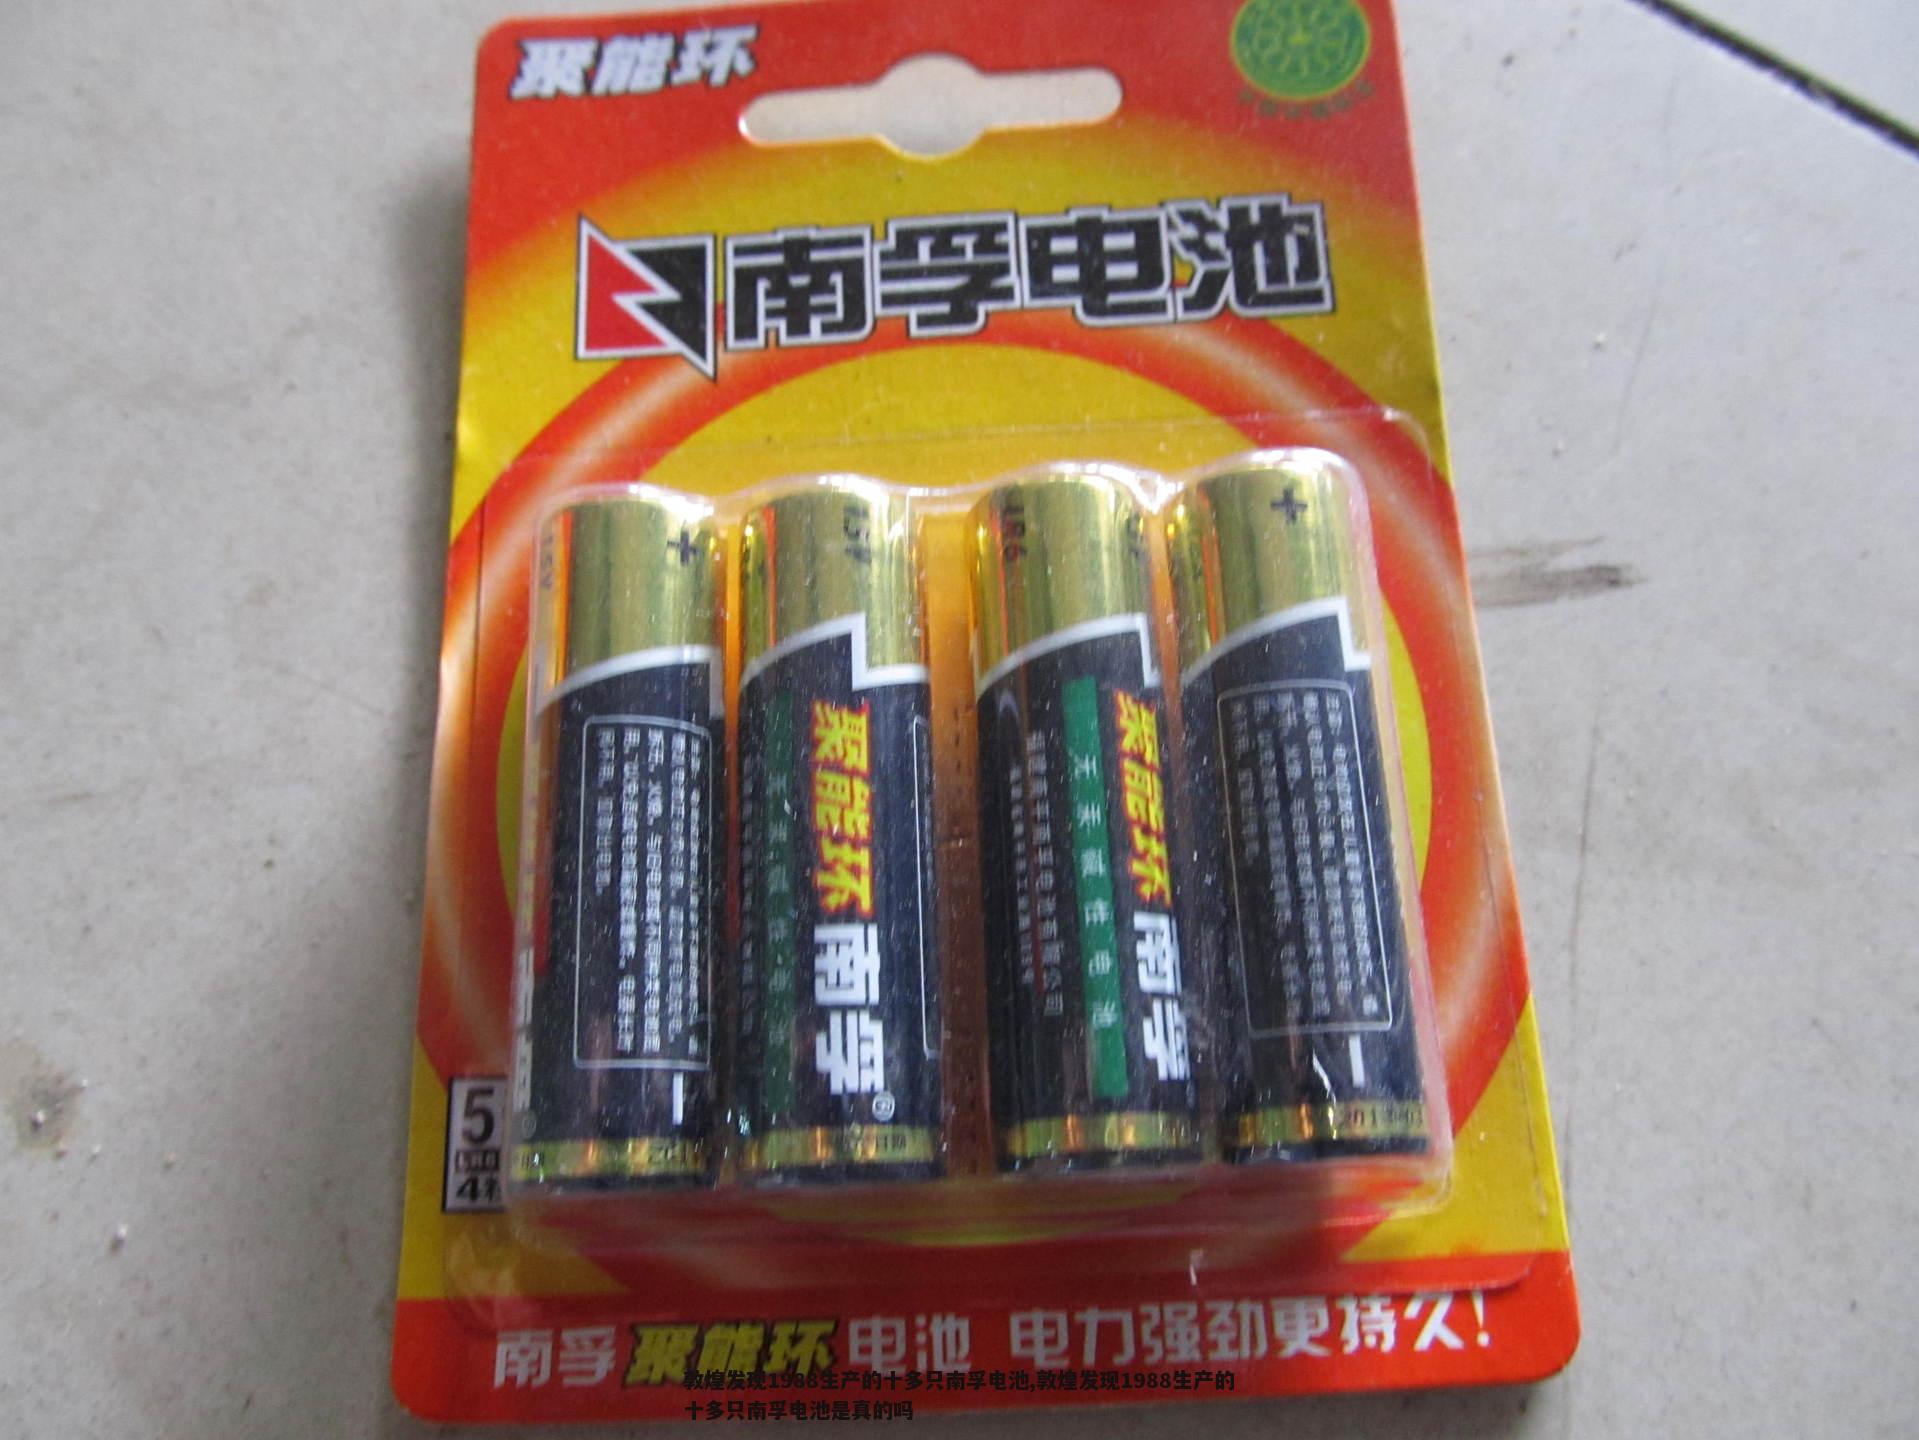 敦煌发现1988生产的十多只南孚电池,敦煌发现1988生产的十多只南孚电池是真的吗